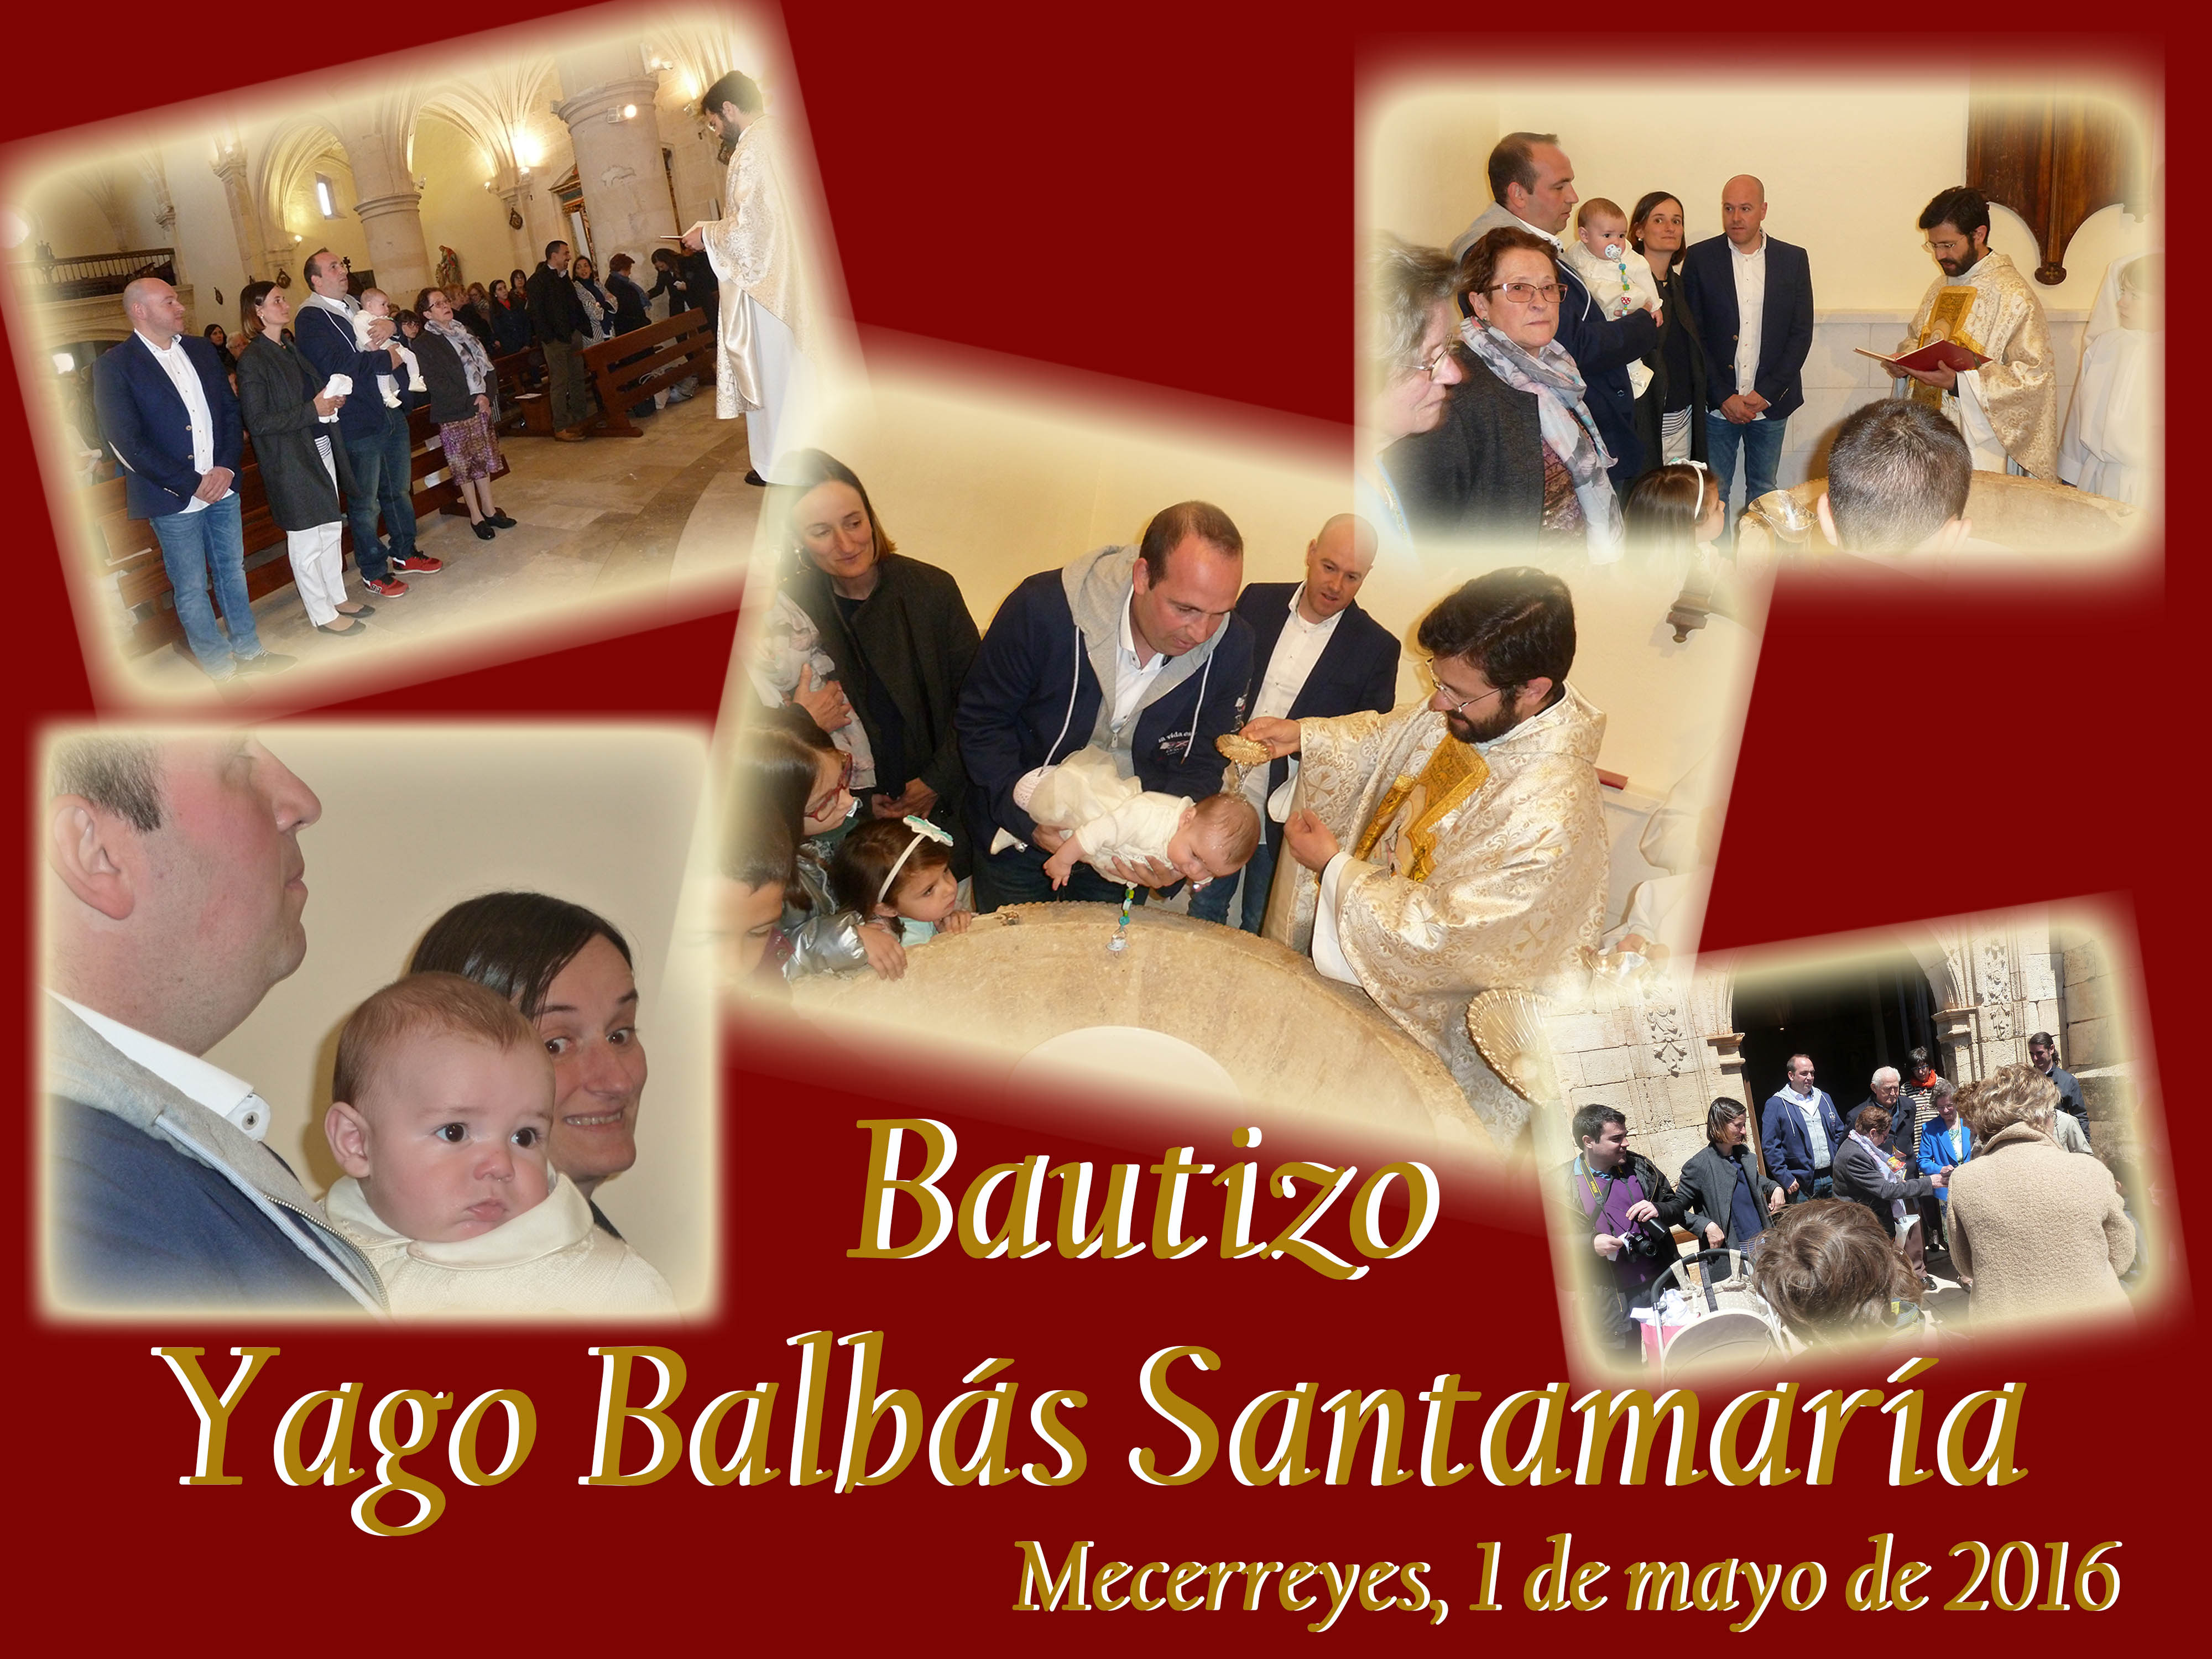 Bautizo Yago Balbás Santamaría, Mecerreyes 1 de mayo de 2016